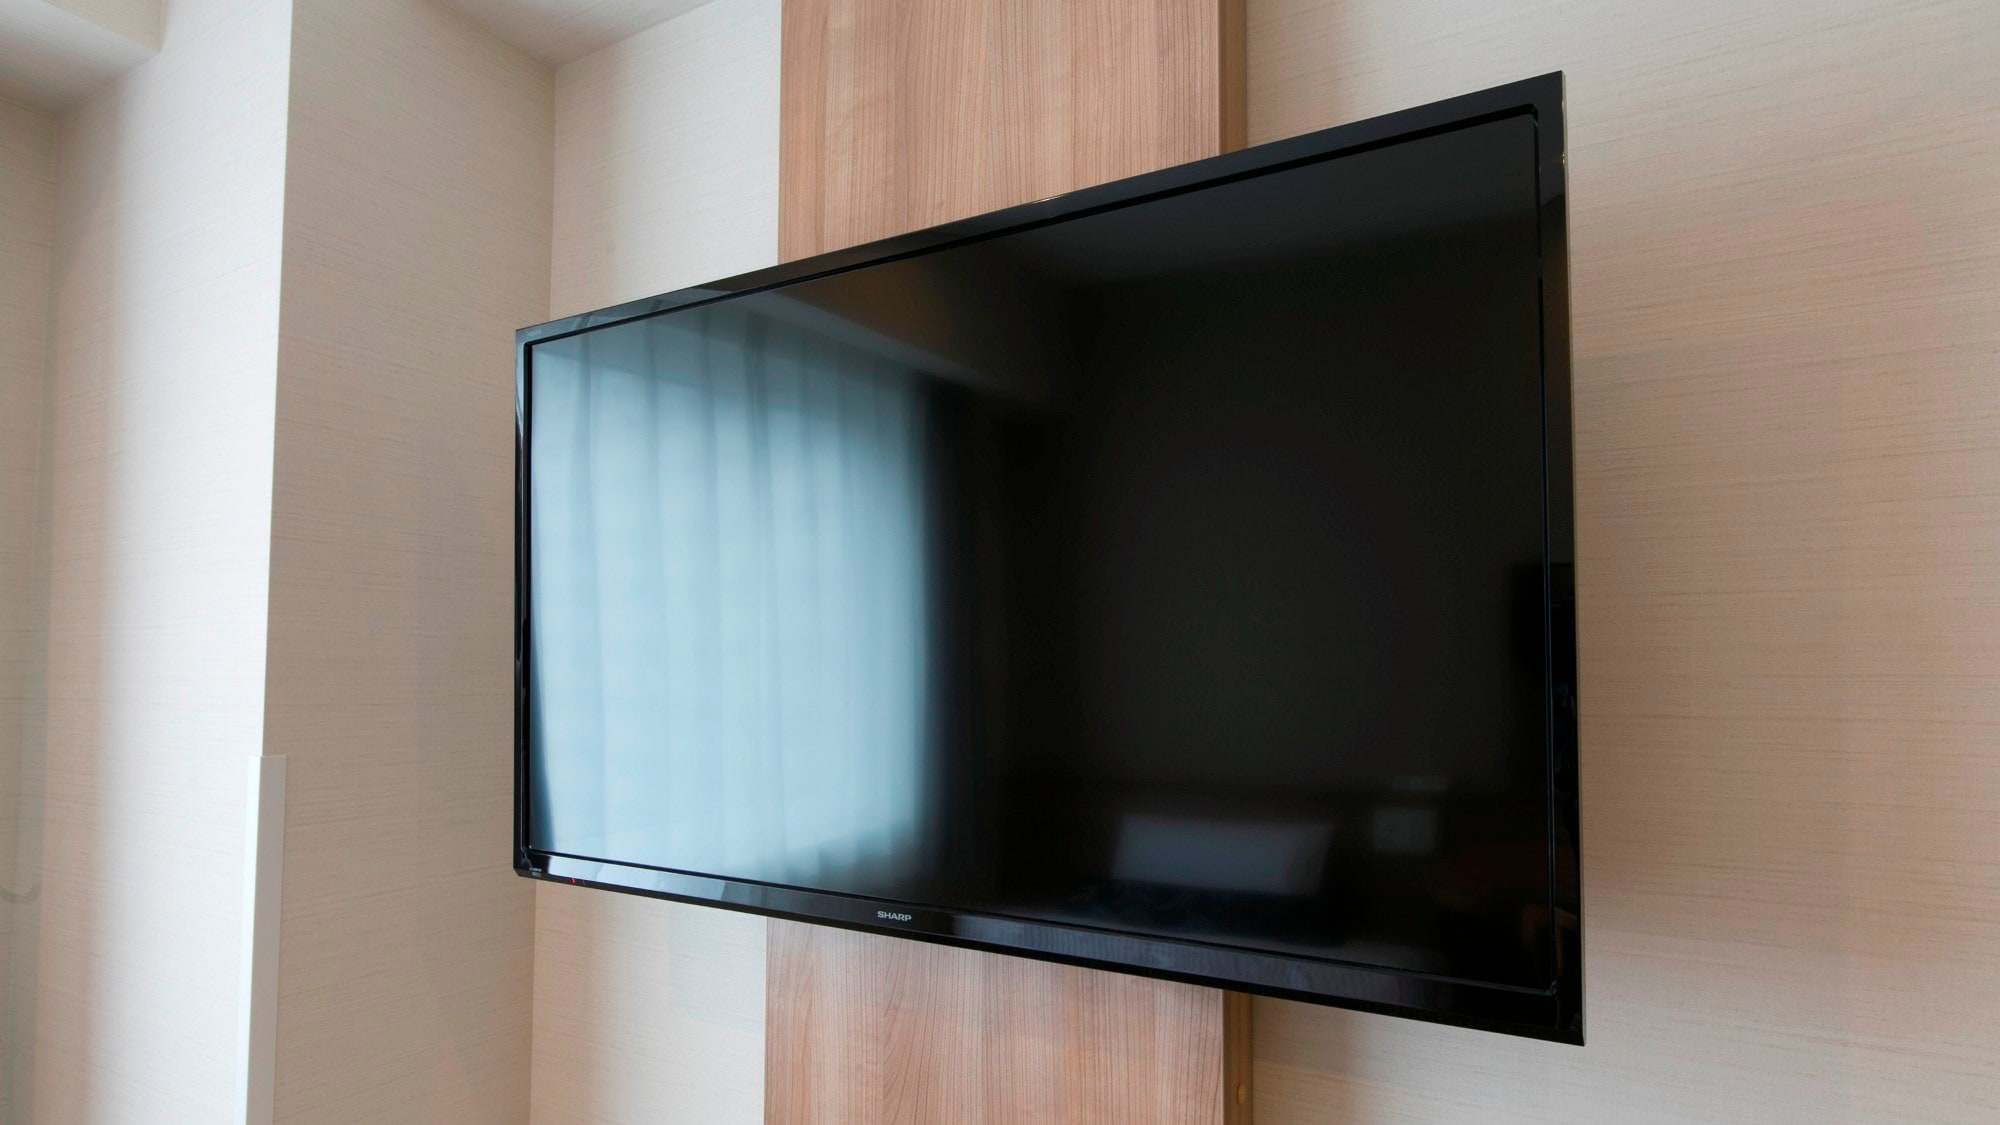 所有客房均配备大屏幕 40 英寸壁挂式电视